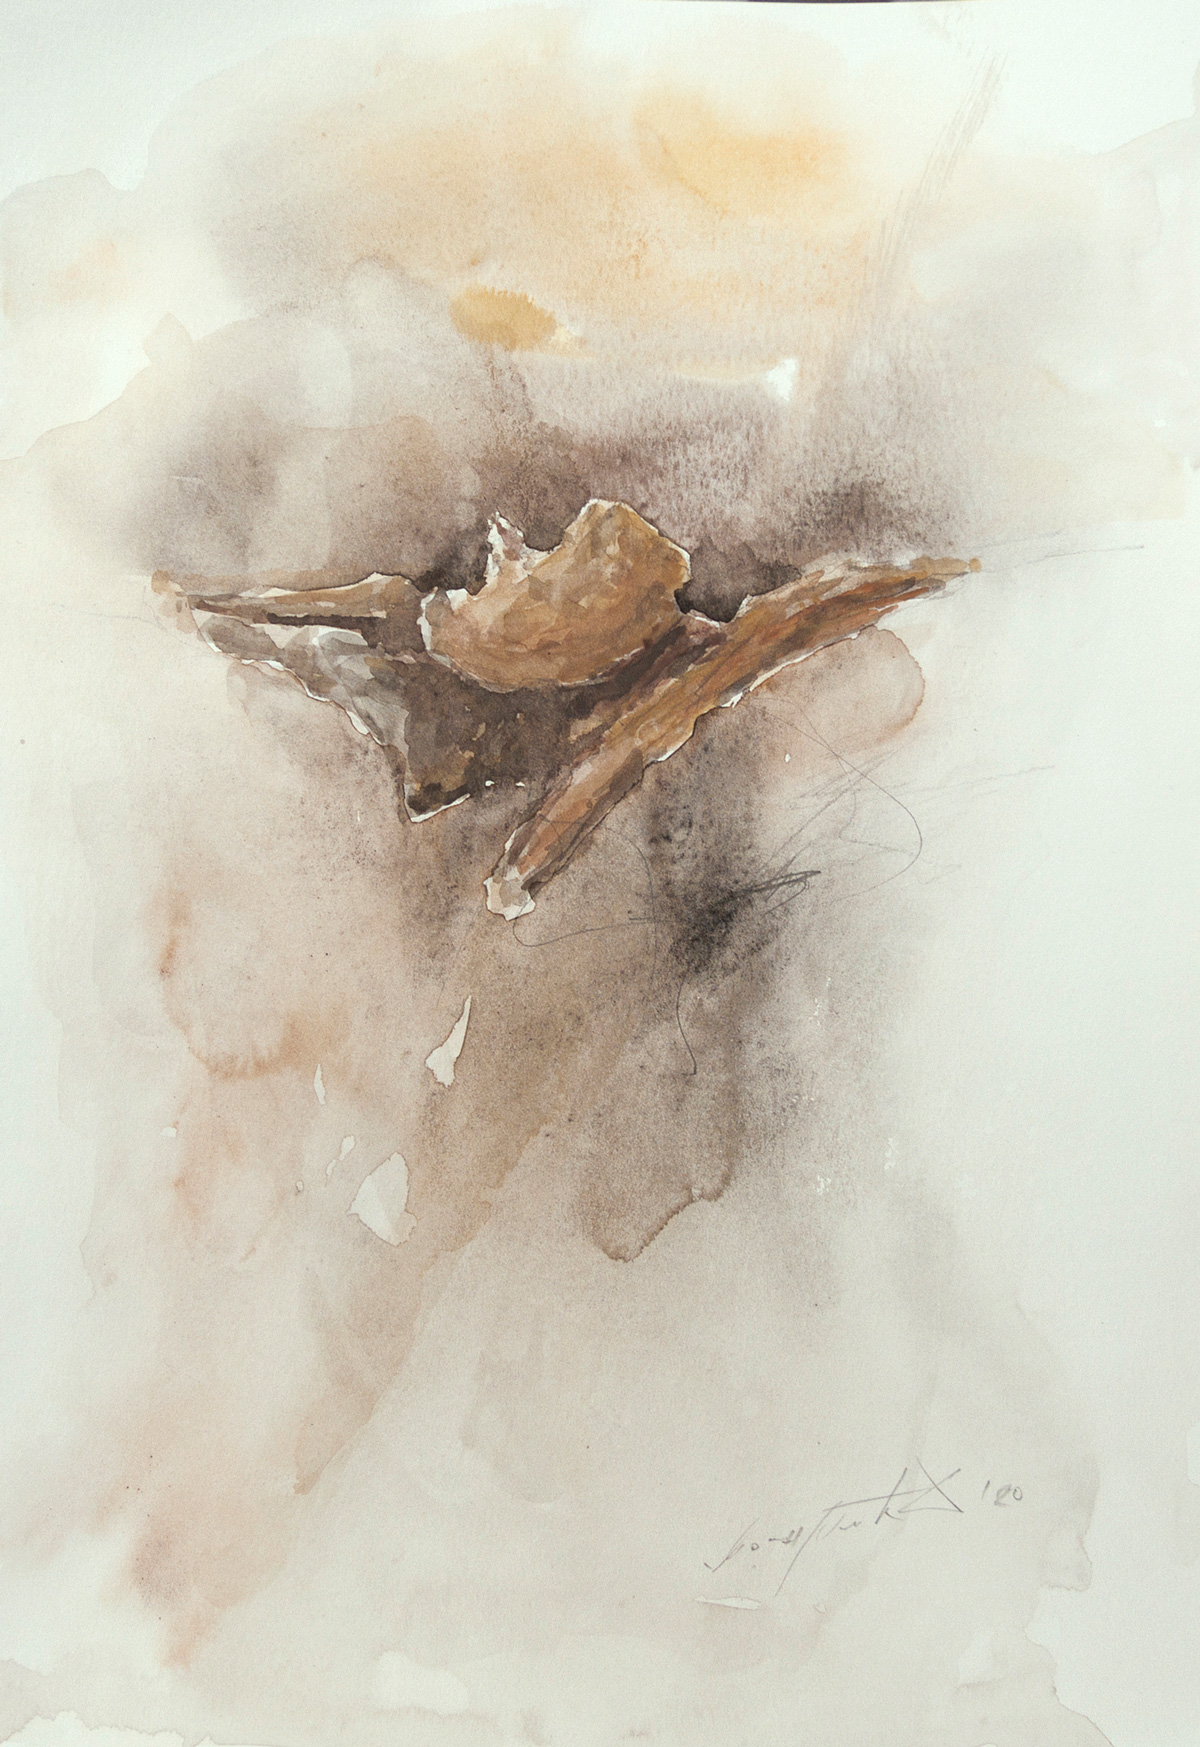 Decollo, acquerello, 42x29,7 cm, 2020